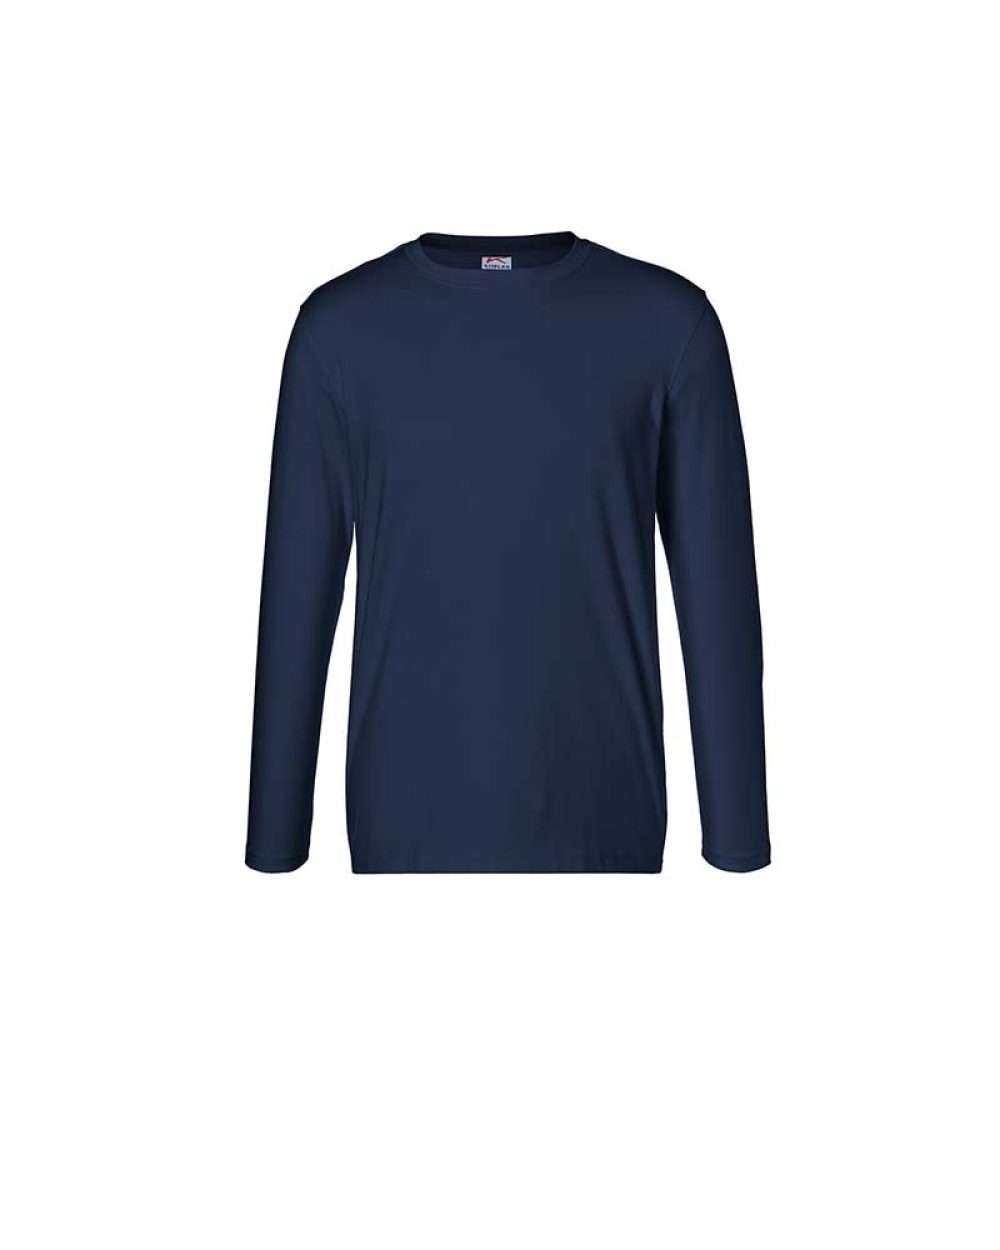 kuebler-langarm-t-shirt-shirts-5025-6240-48